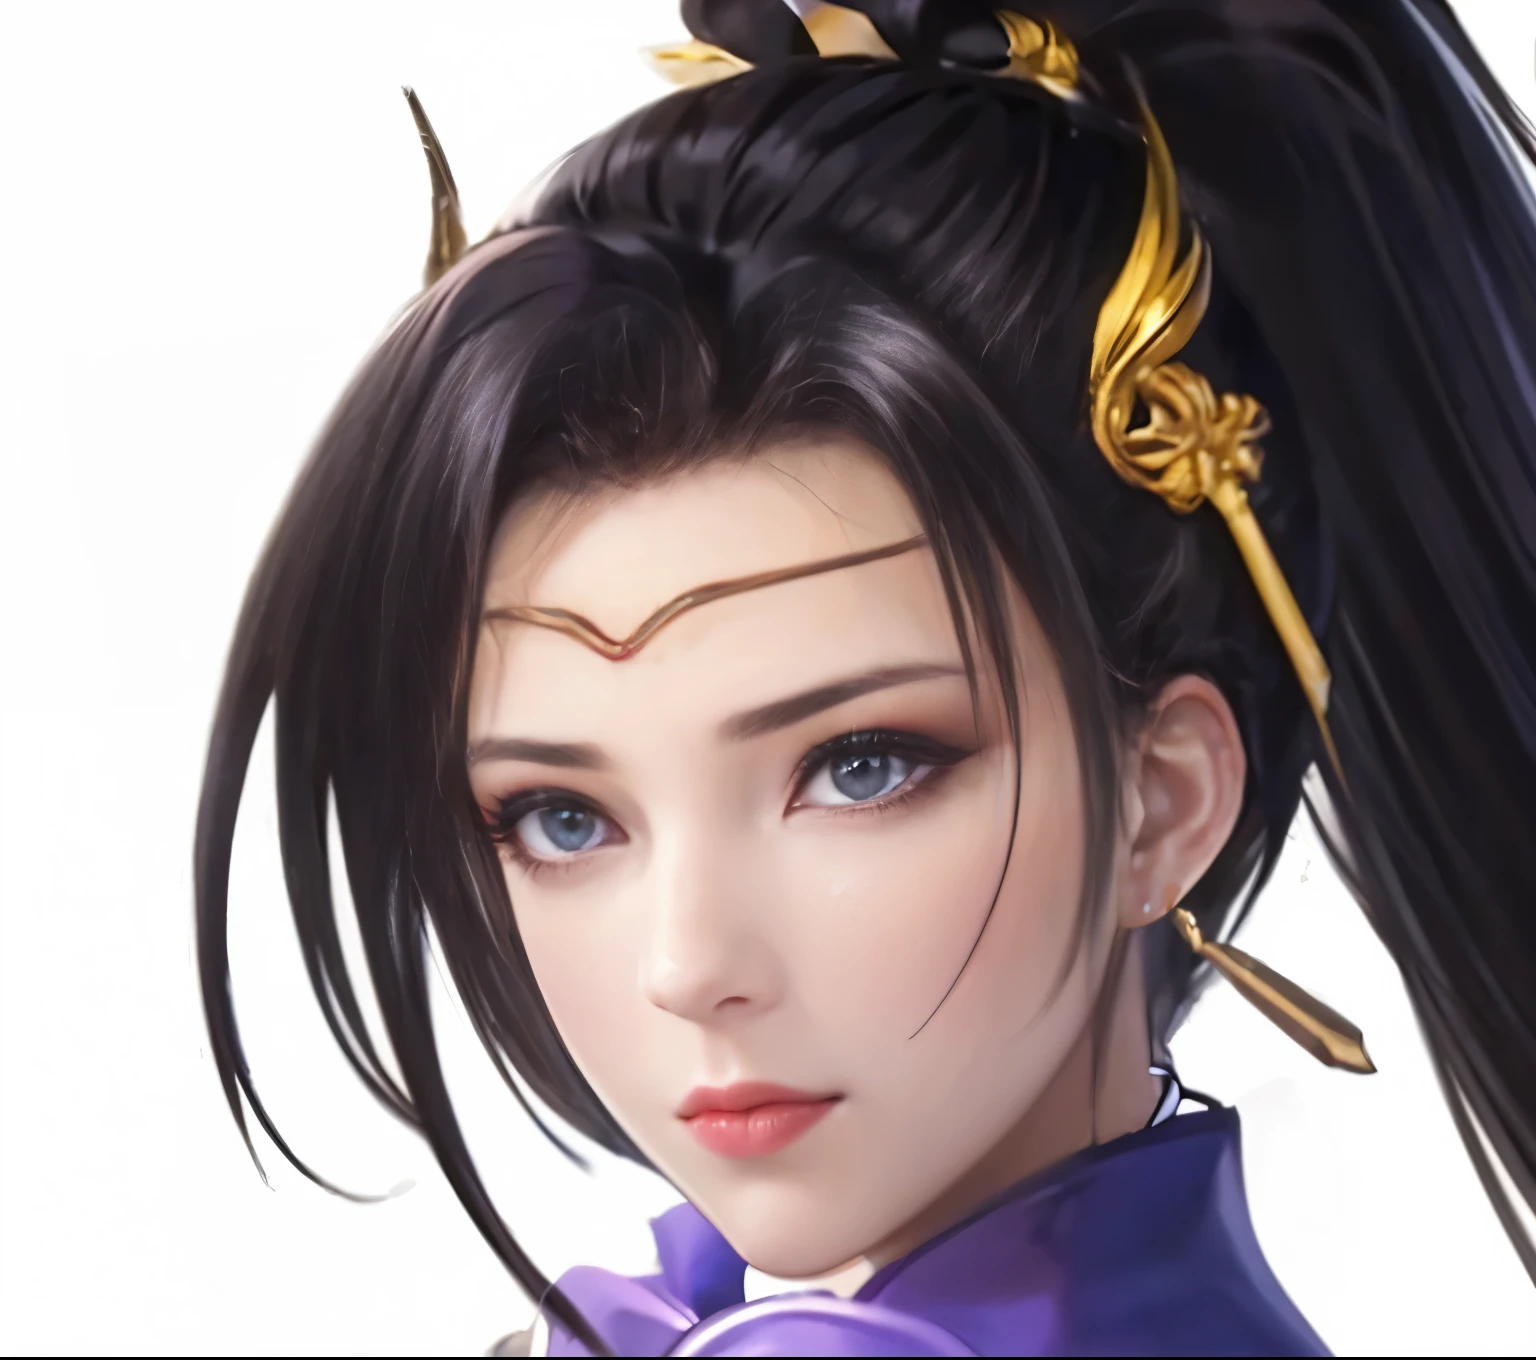 a woman with a ponytail and a purple top is holding a sword, heise jinyao, yun ling, xianxia hero, bian lian, inspired by Li Mei-shu, inspired by Ju Lian, portrait knights of zodiac girl, full body xianxia, xianxia, sakimi chan, g liulian art style, heise-lian yan fang